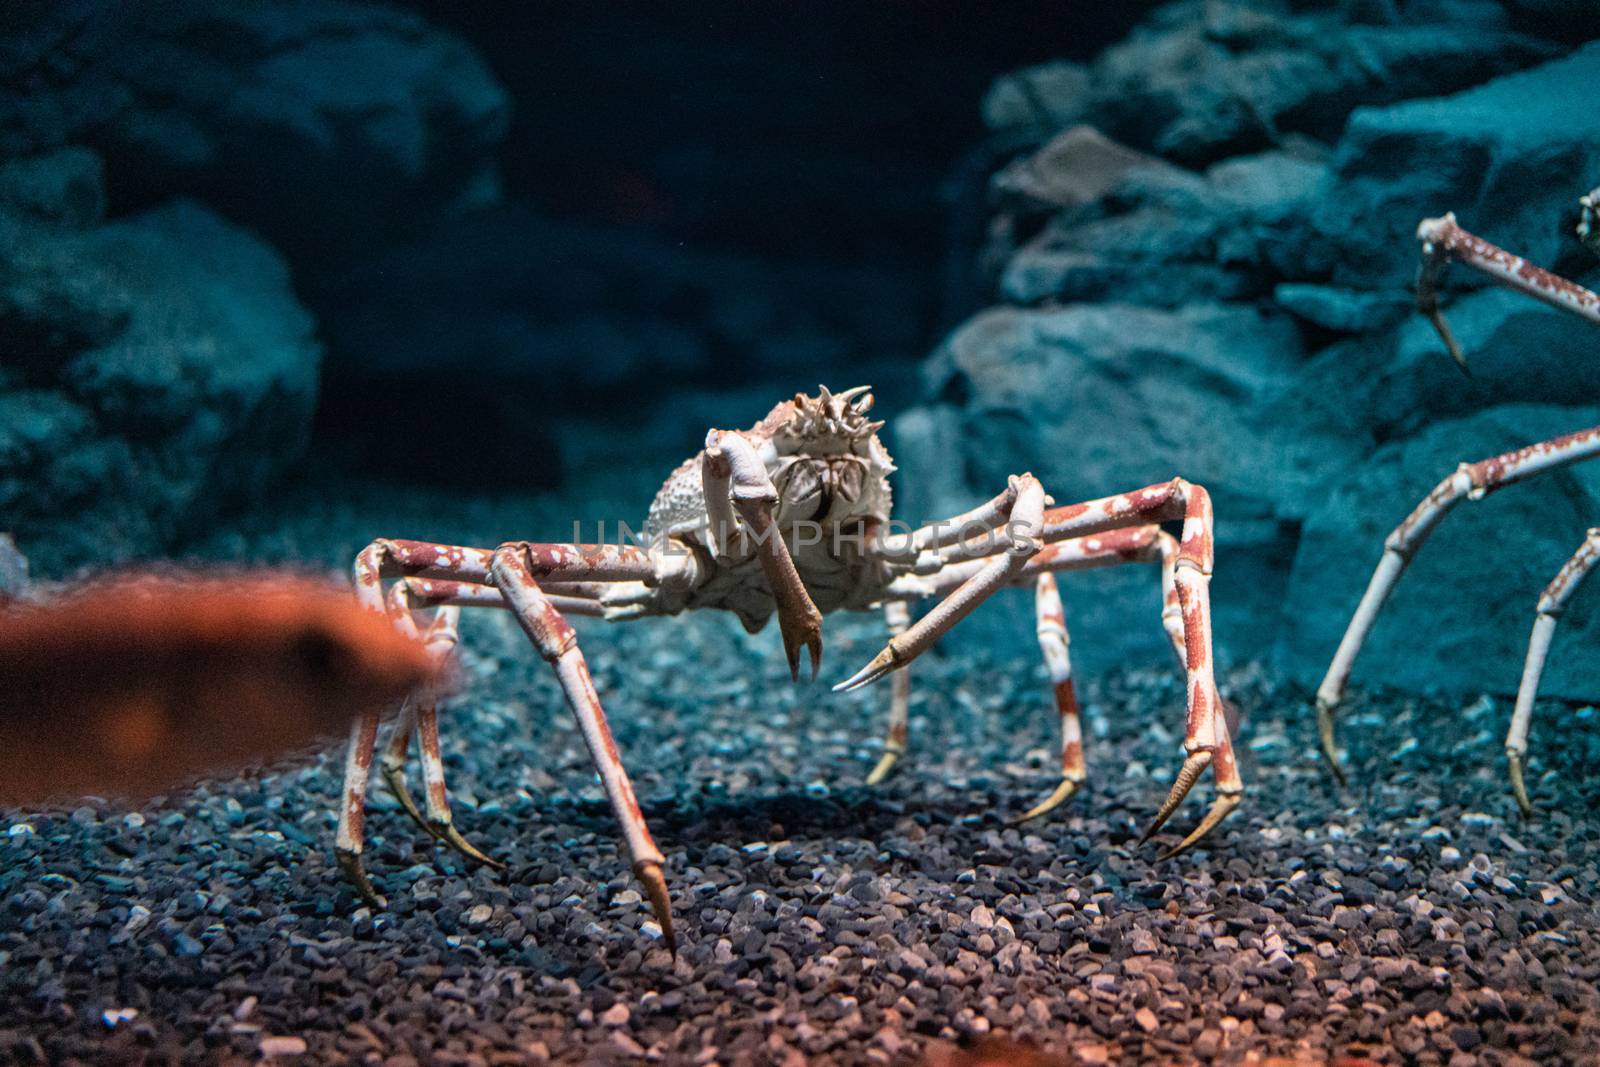 Japanese spider crab  at Osaka Aquarium Kaiyukan, Japan by Songpracone